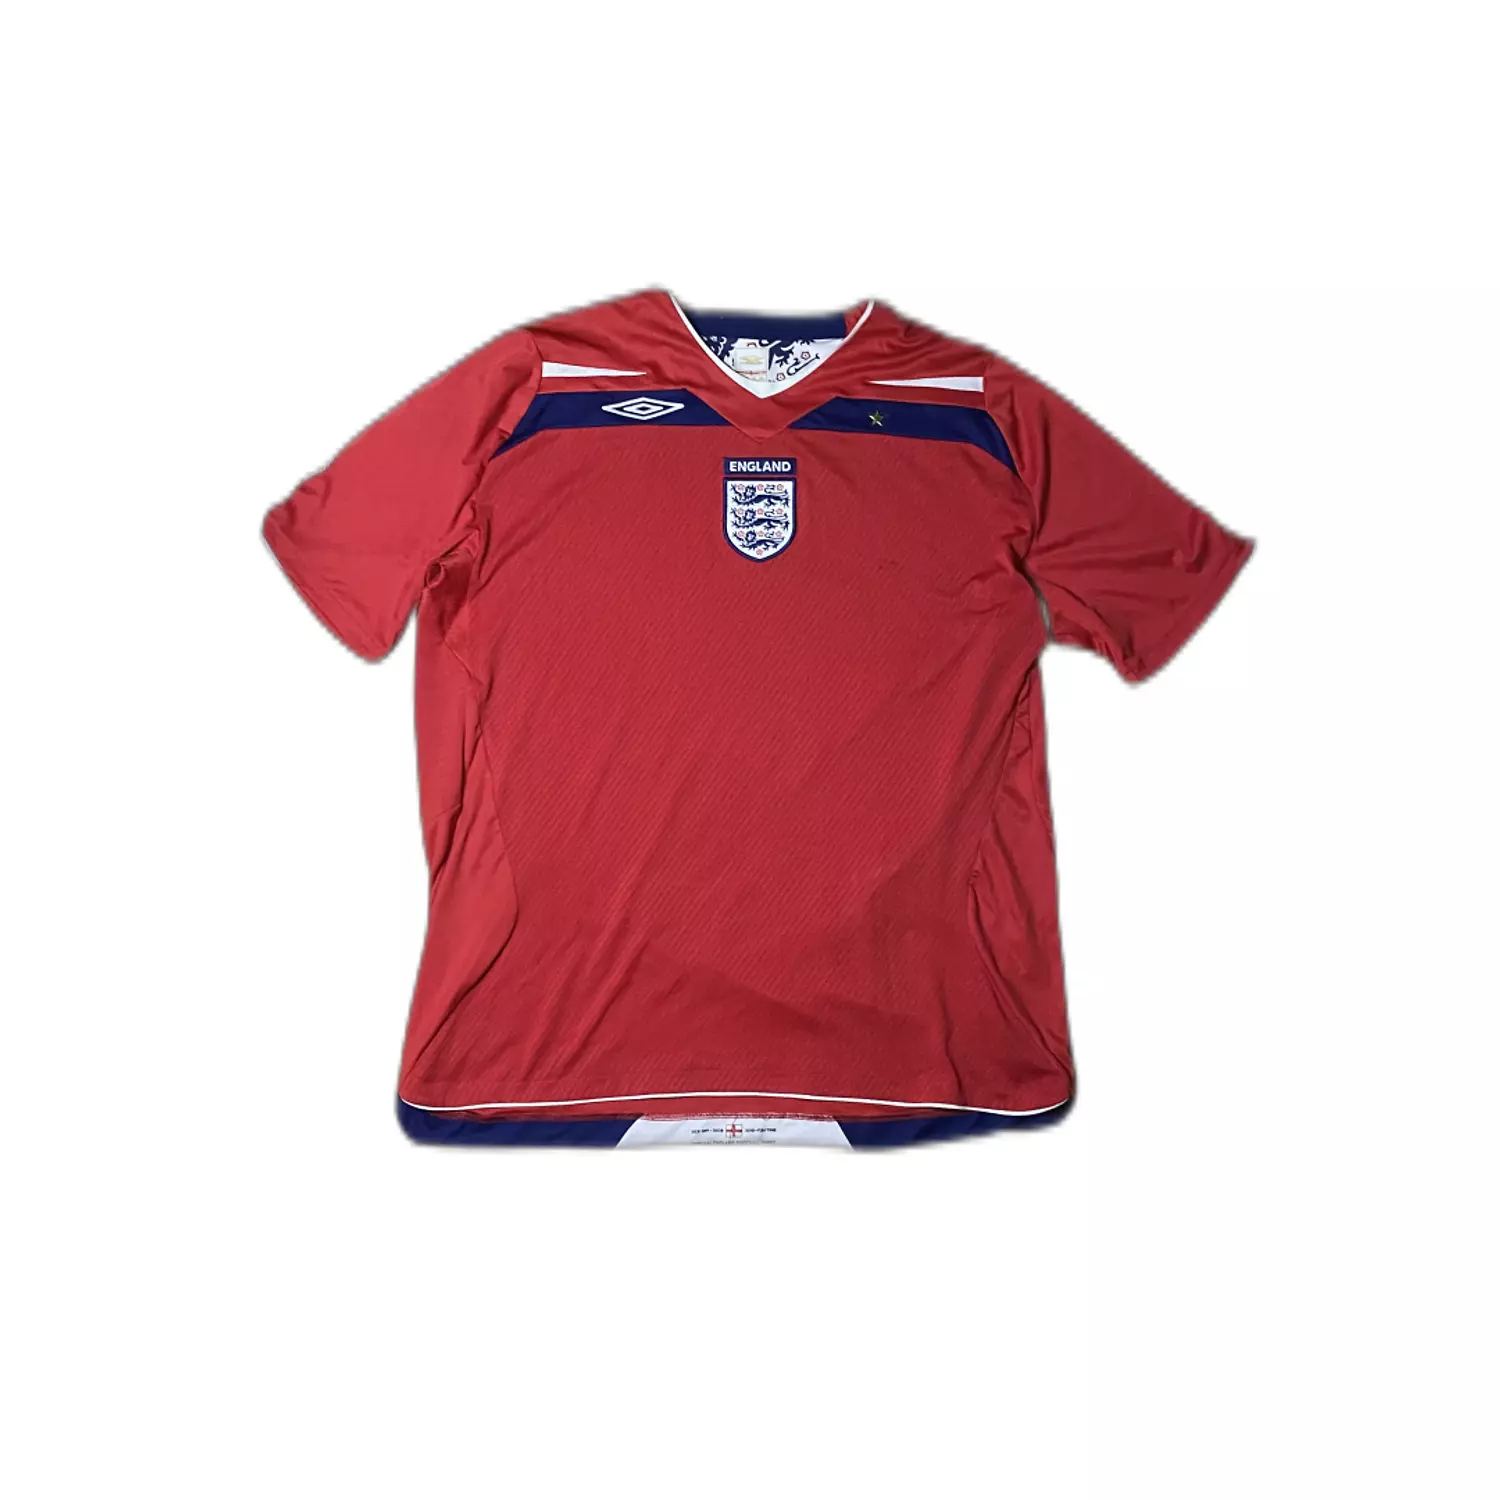 England 2008 Away Kit (XL)  0